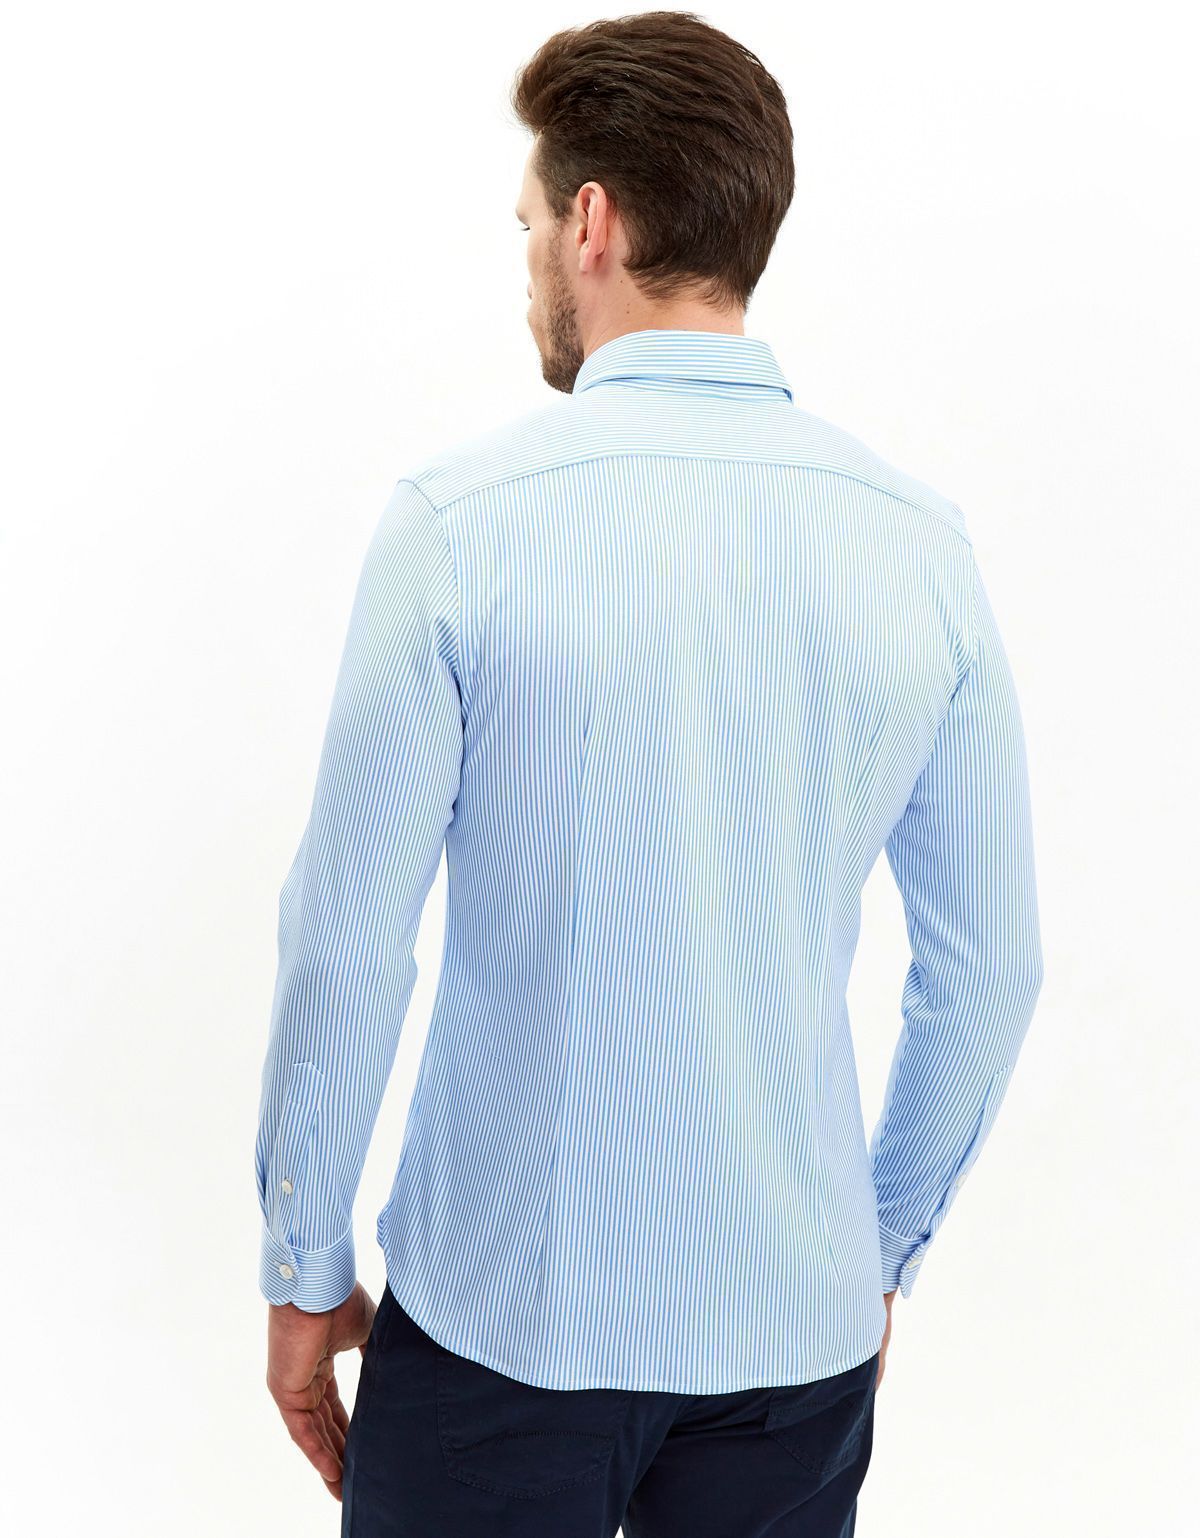 Рубашка мужская трикотажная Olymp Signature в голубую полоску